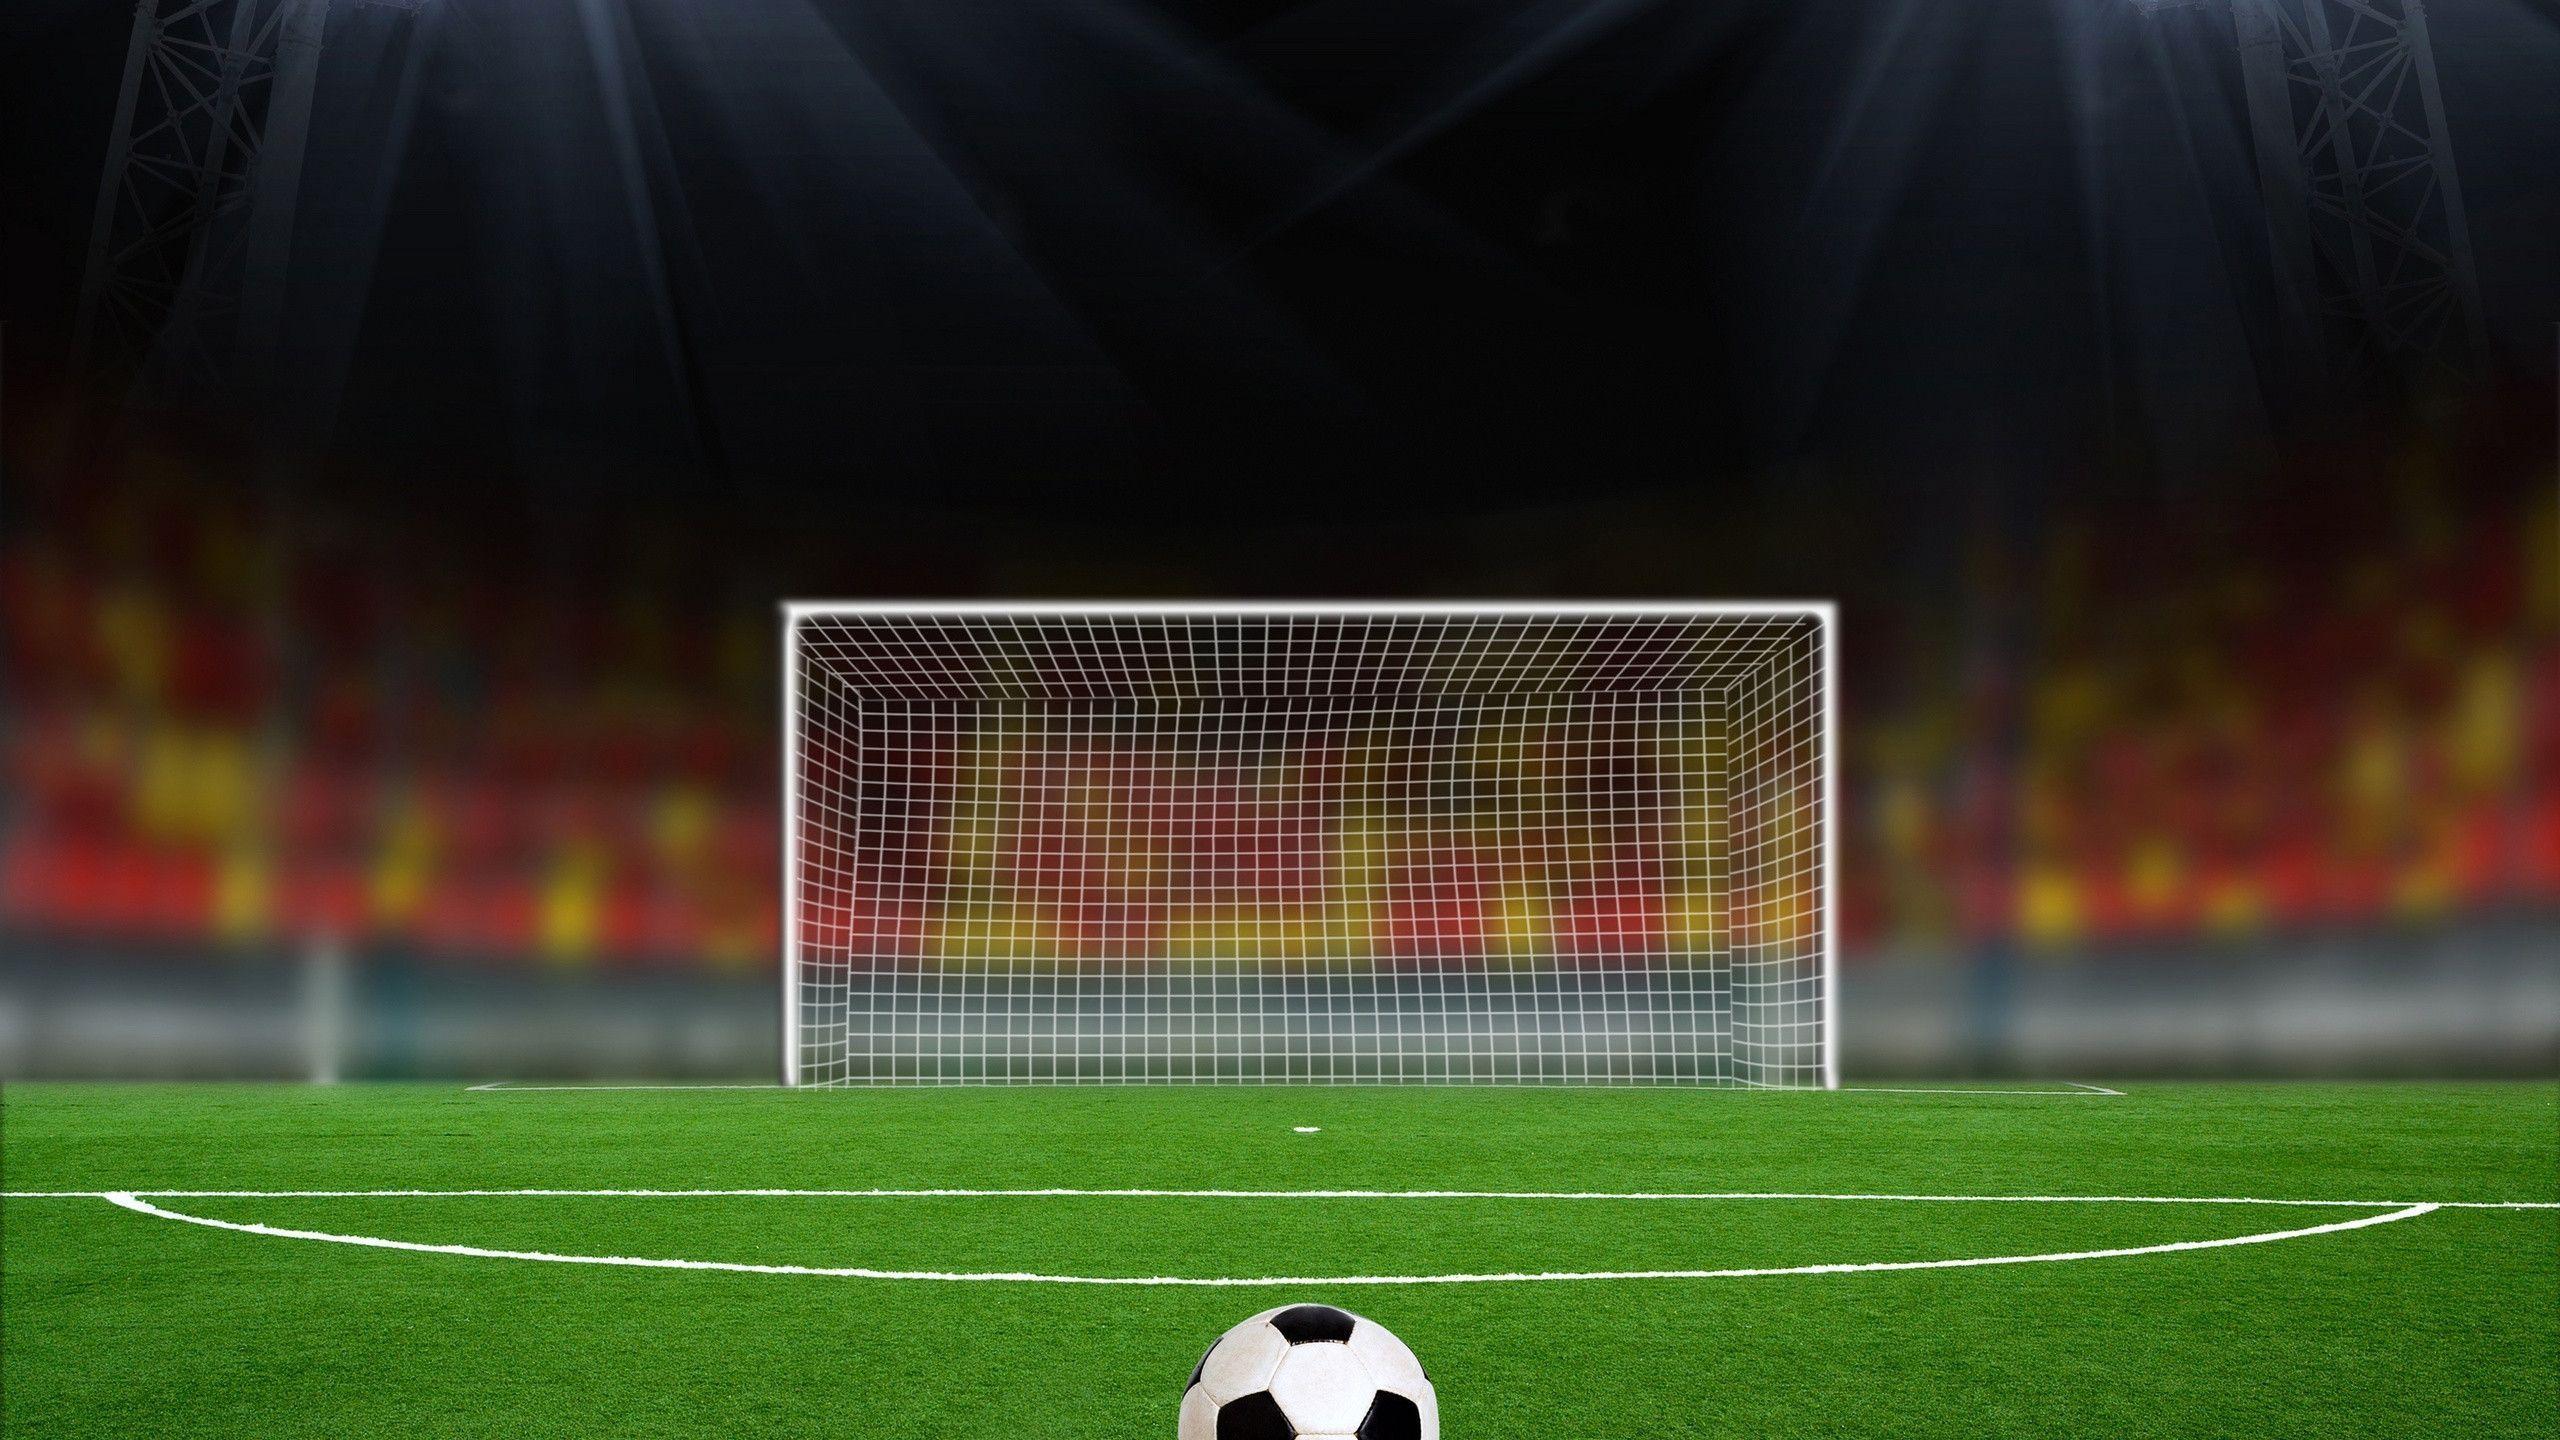 Football Desktop Backgrounds - Wallpaper Cave2560 x 1440